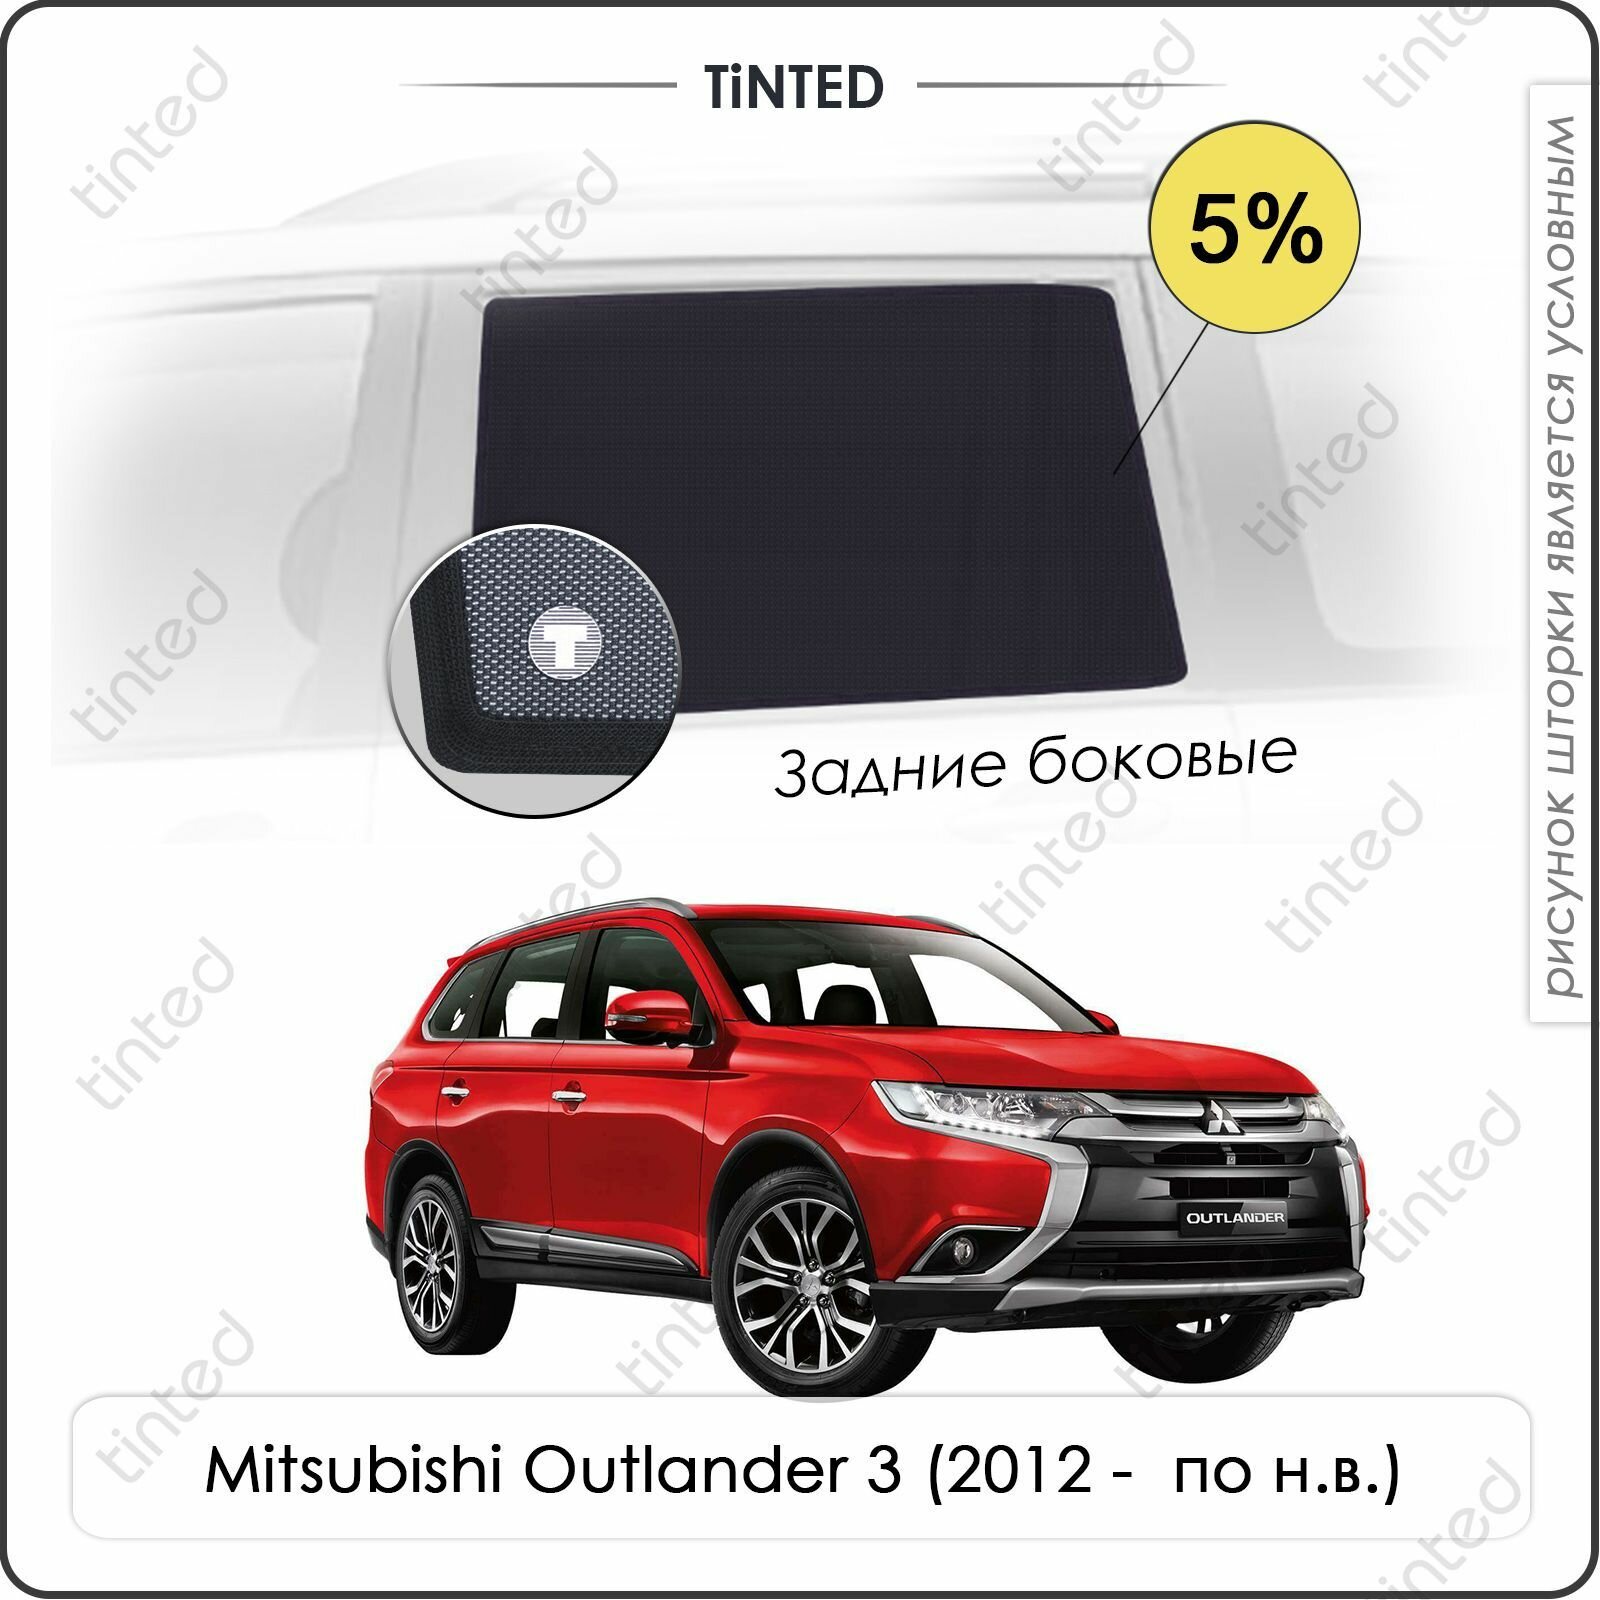 Шторки на автомобиль солнцезащитные Mitsubishi Outlander 3 Кроссовер 5дв. (2012 - по н. в.) на передние двери 5% сетки от солнца в машину митсубиси аутлендер Каркасные автошторки Premium